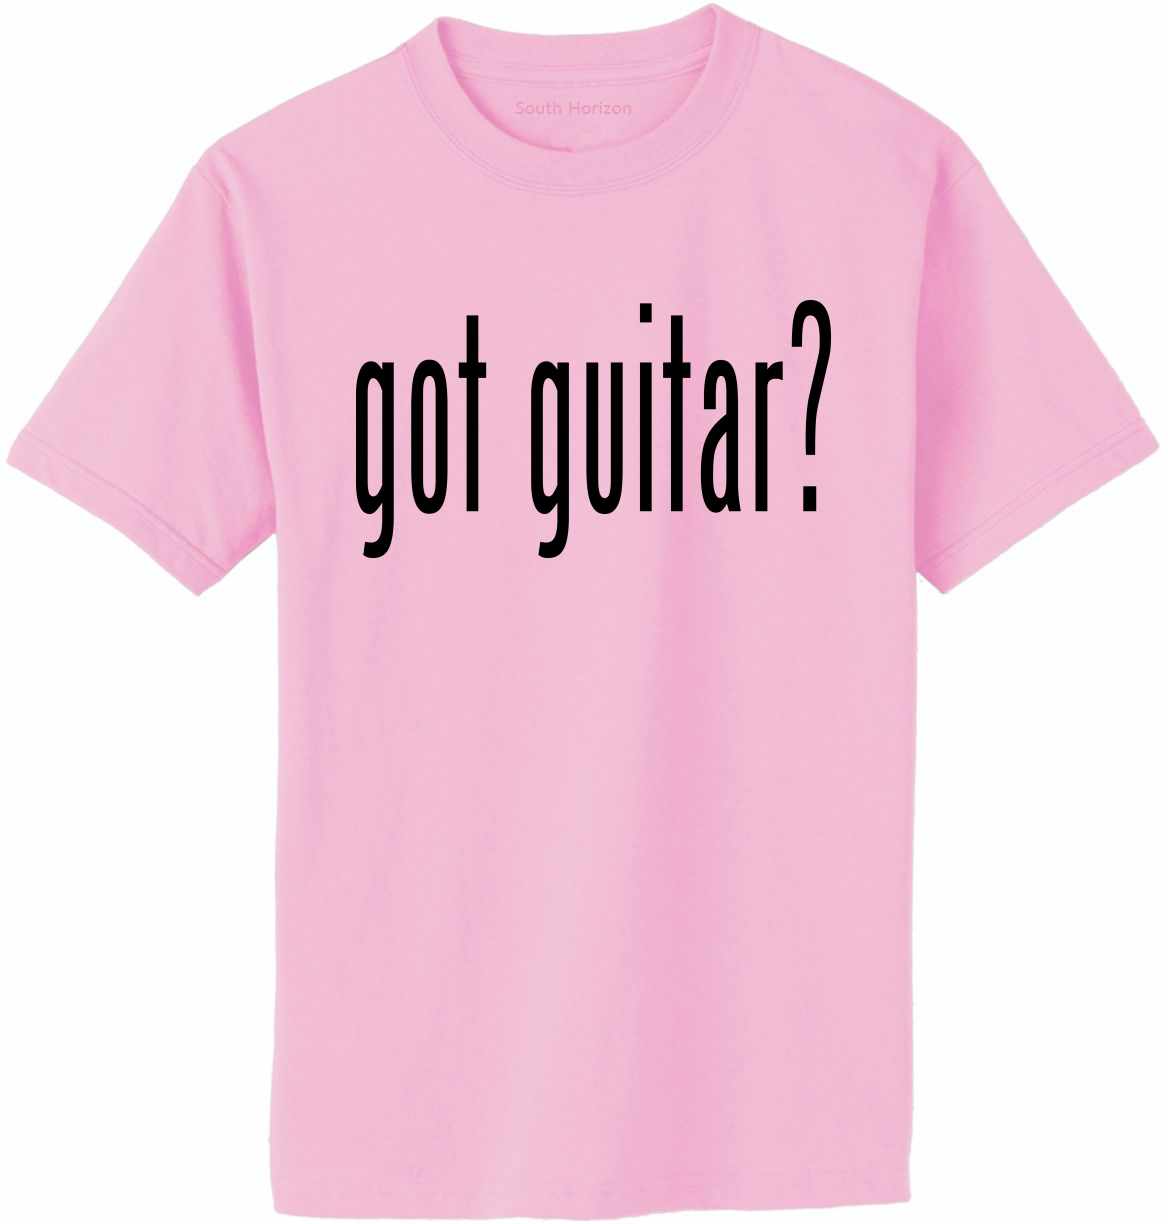 Got Guitar? Adult T-Shirt (#892-1)